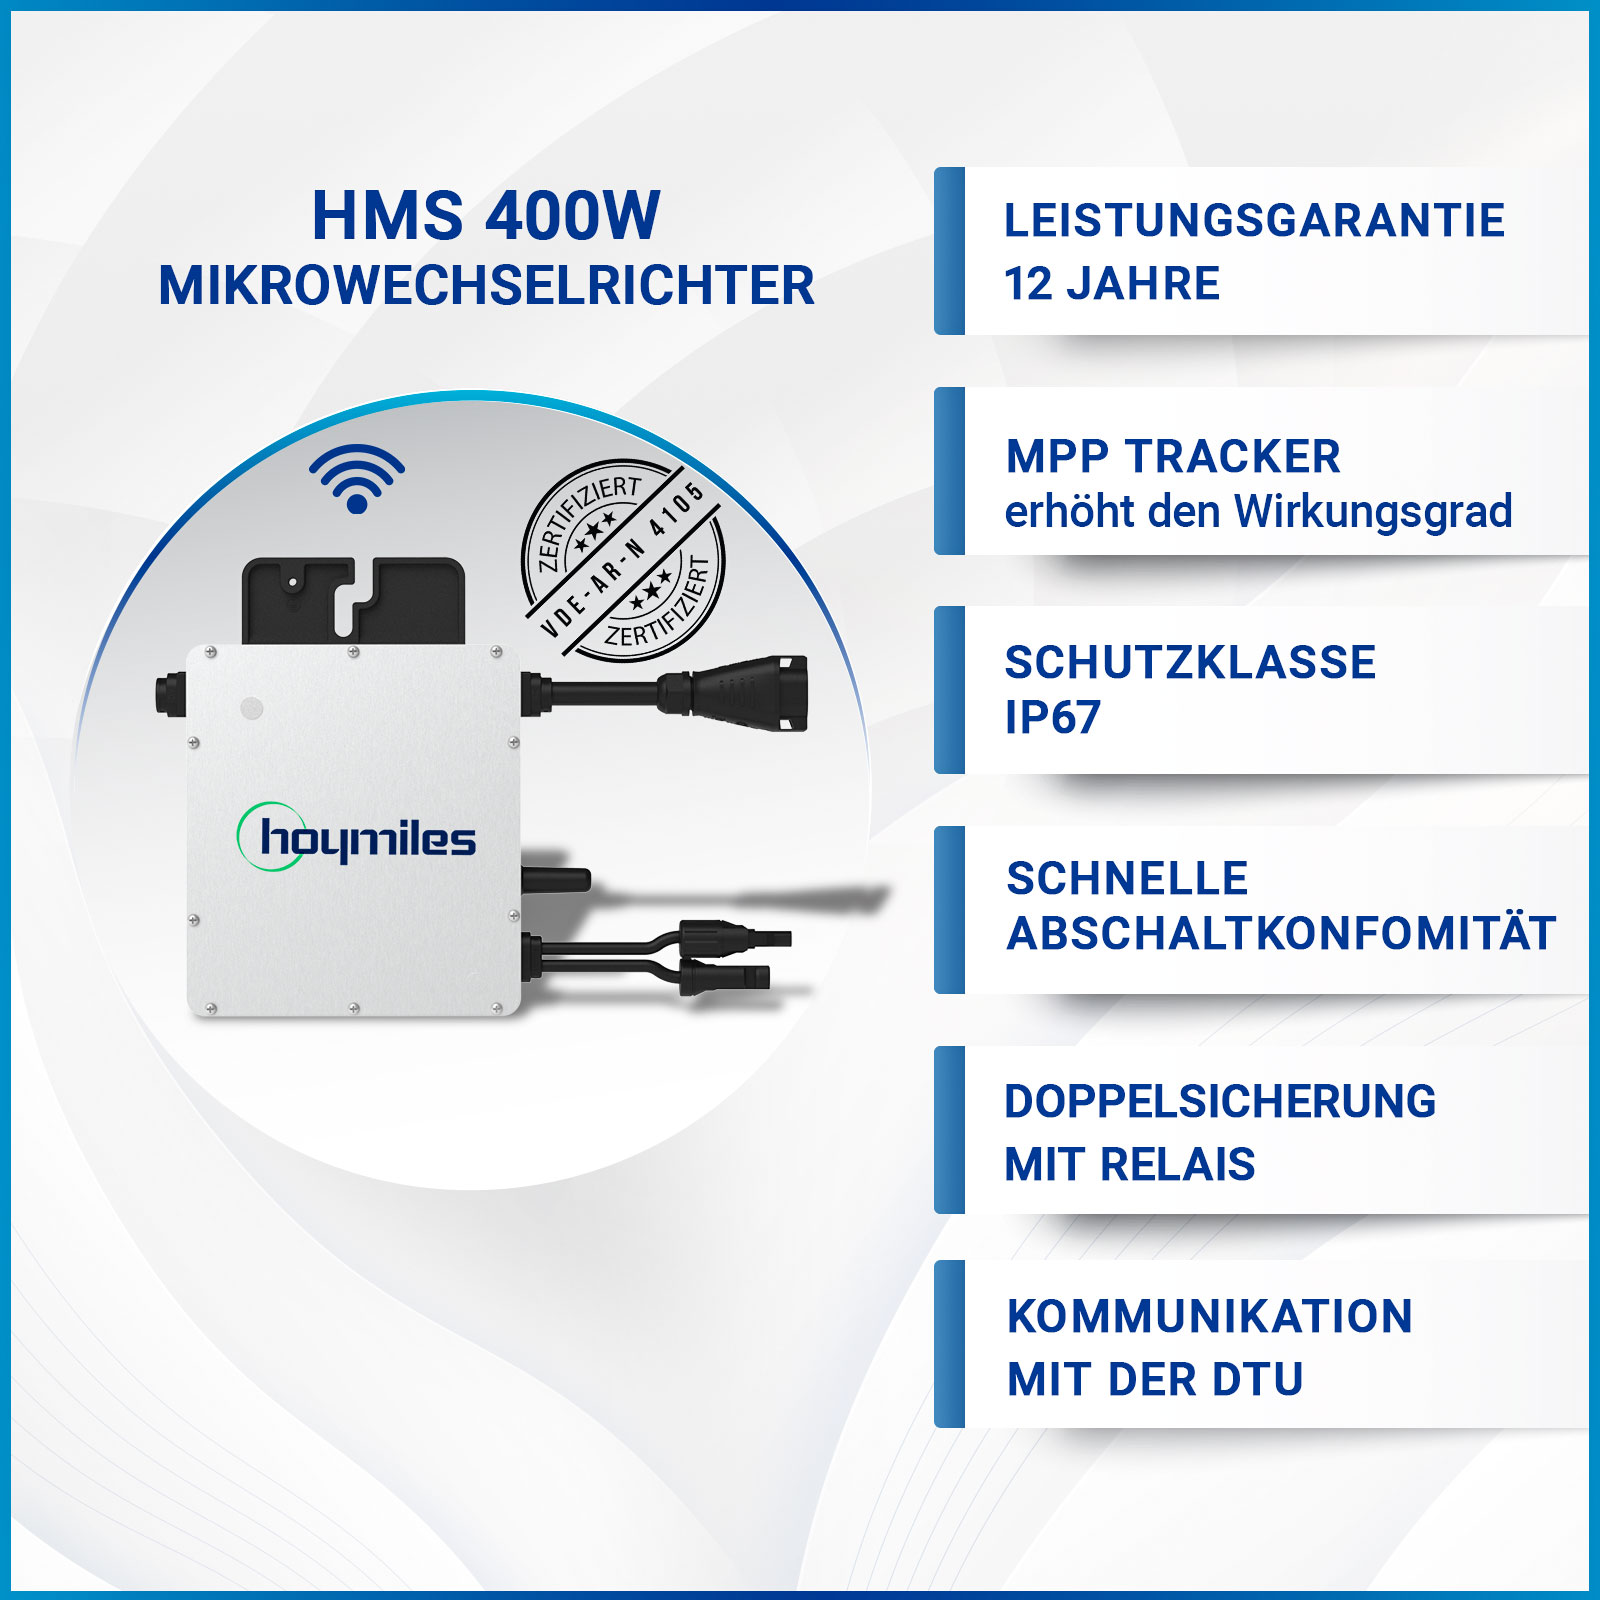 Hoymiles HM-400 Mikro Wechselrichter